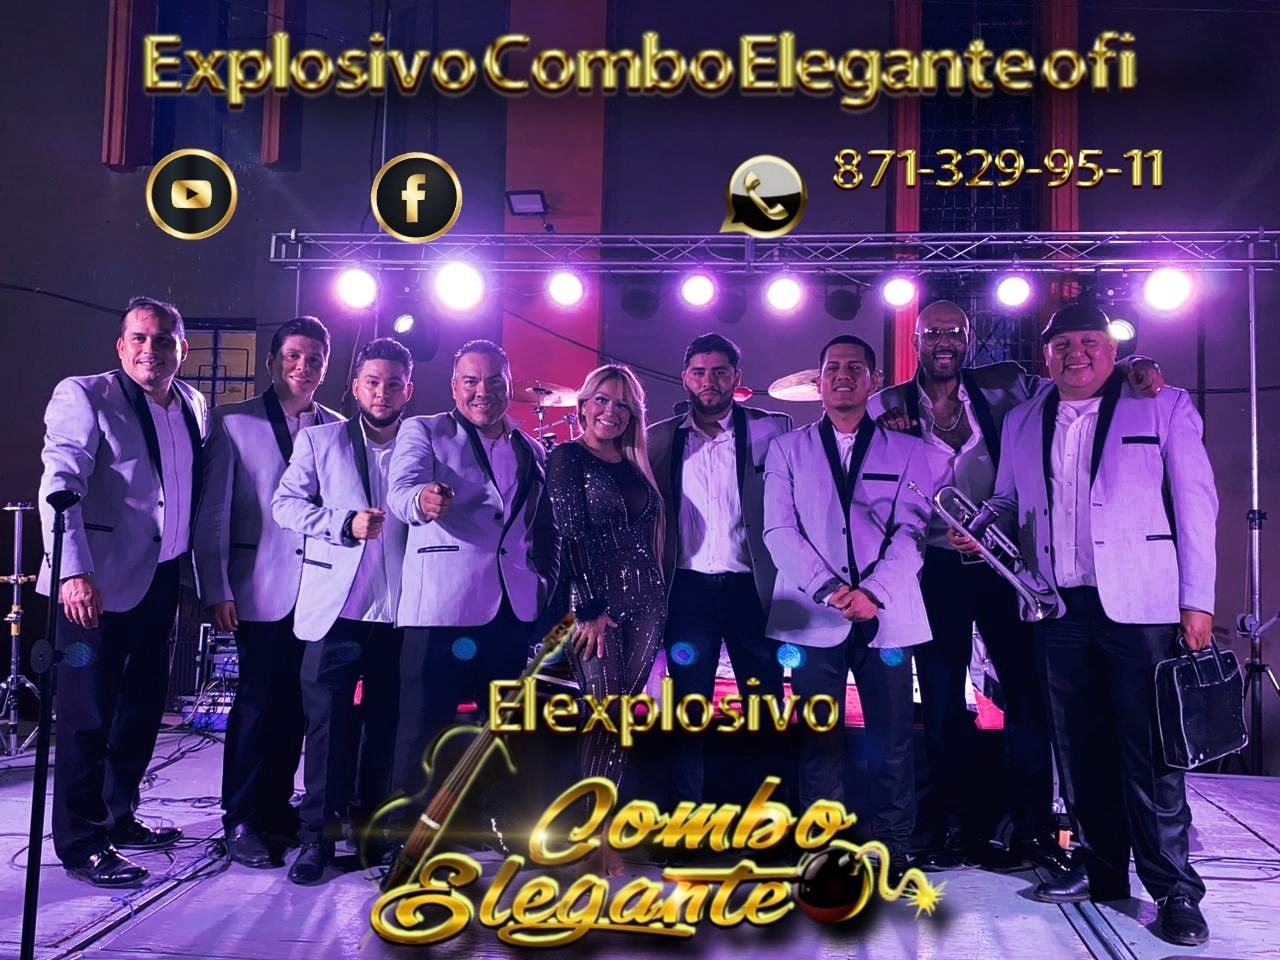 Celebración. La llegada de la primavera y el aniversario de Los Primeritos de Colombia es motivo perfecto para festejar con una gran fiesta junto a varios talentos musicales como Combo Elegante.